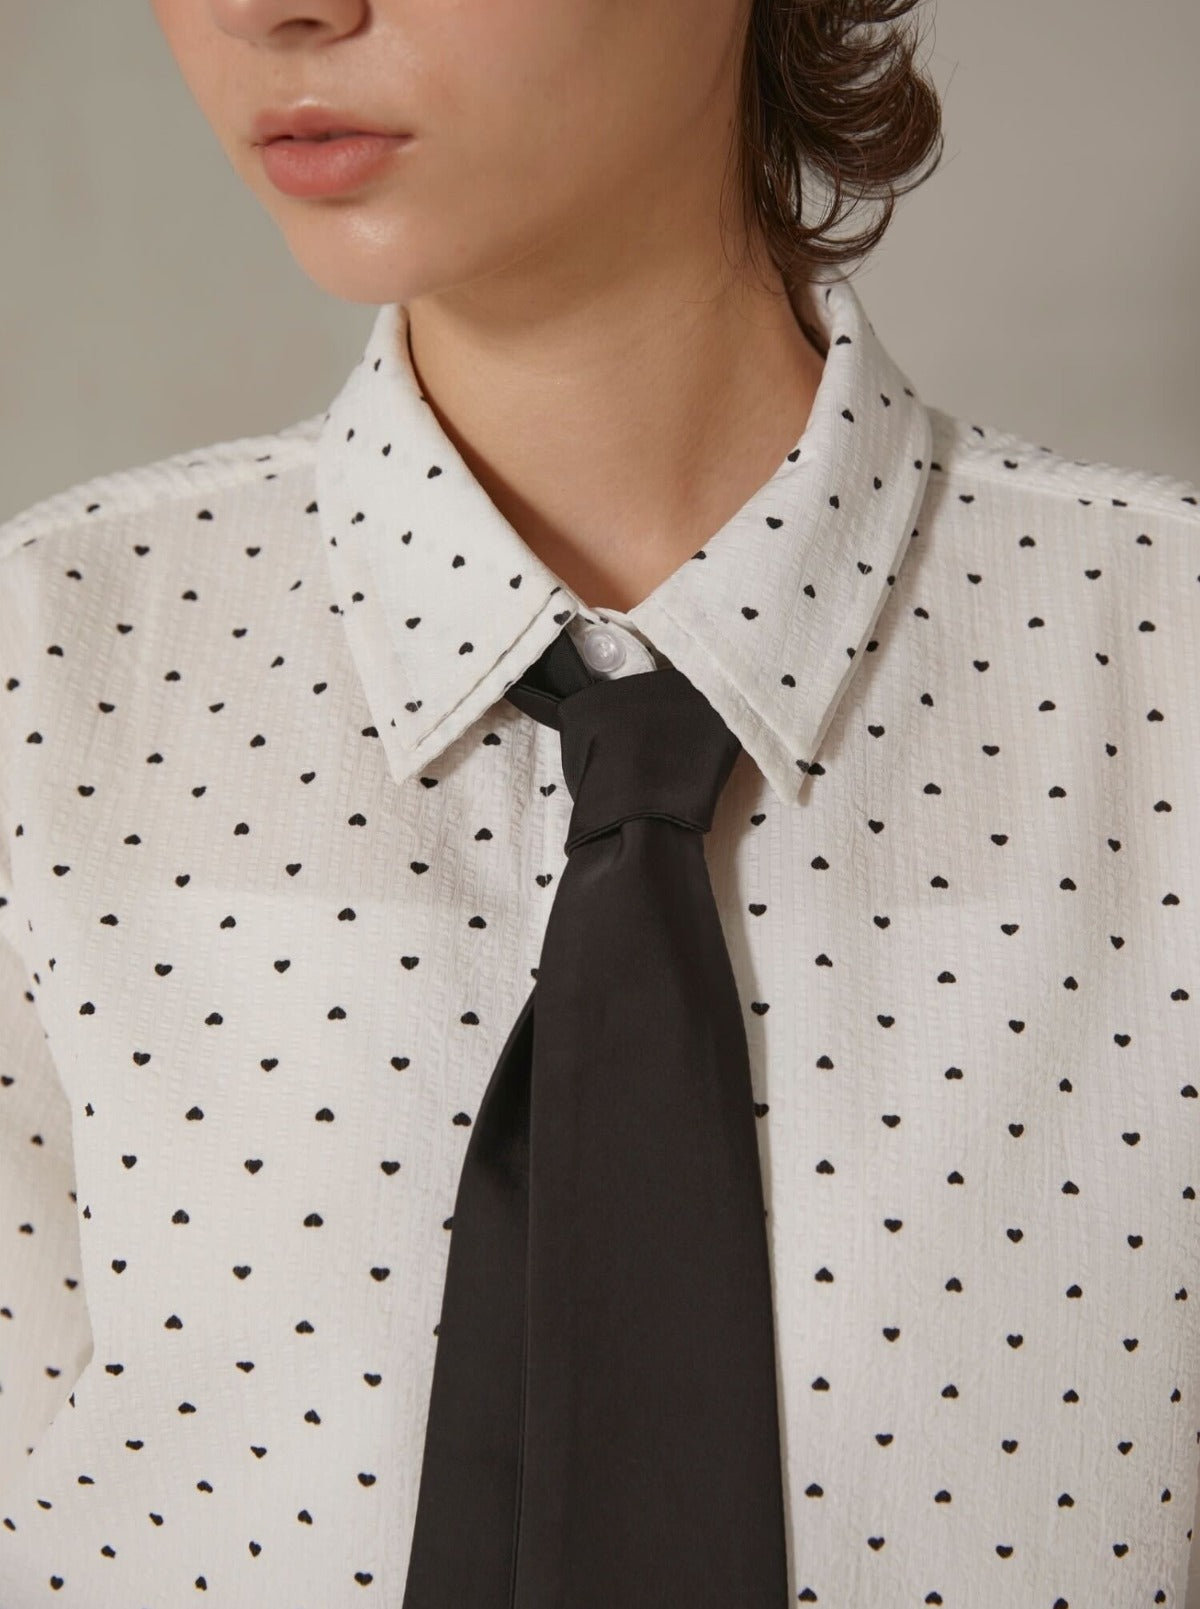 heart pattern necktie shirt